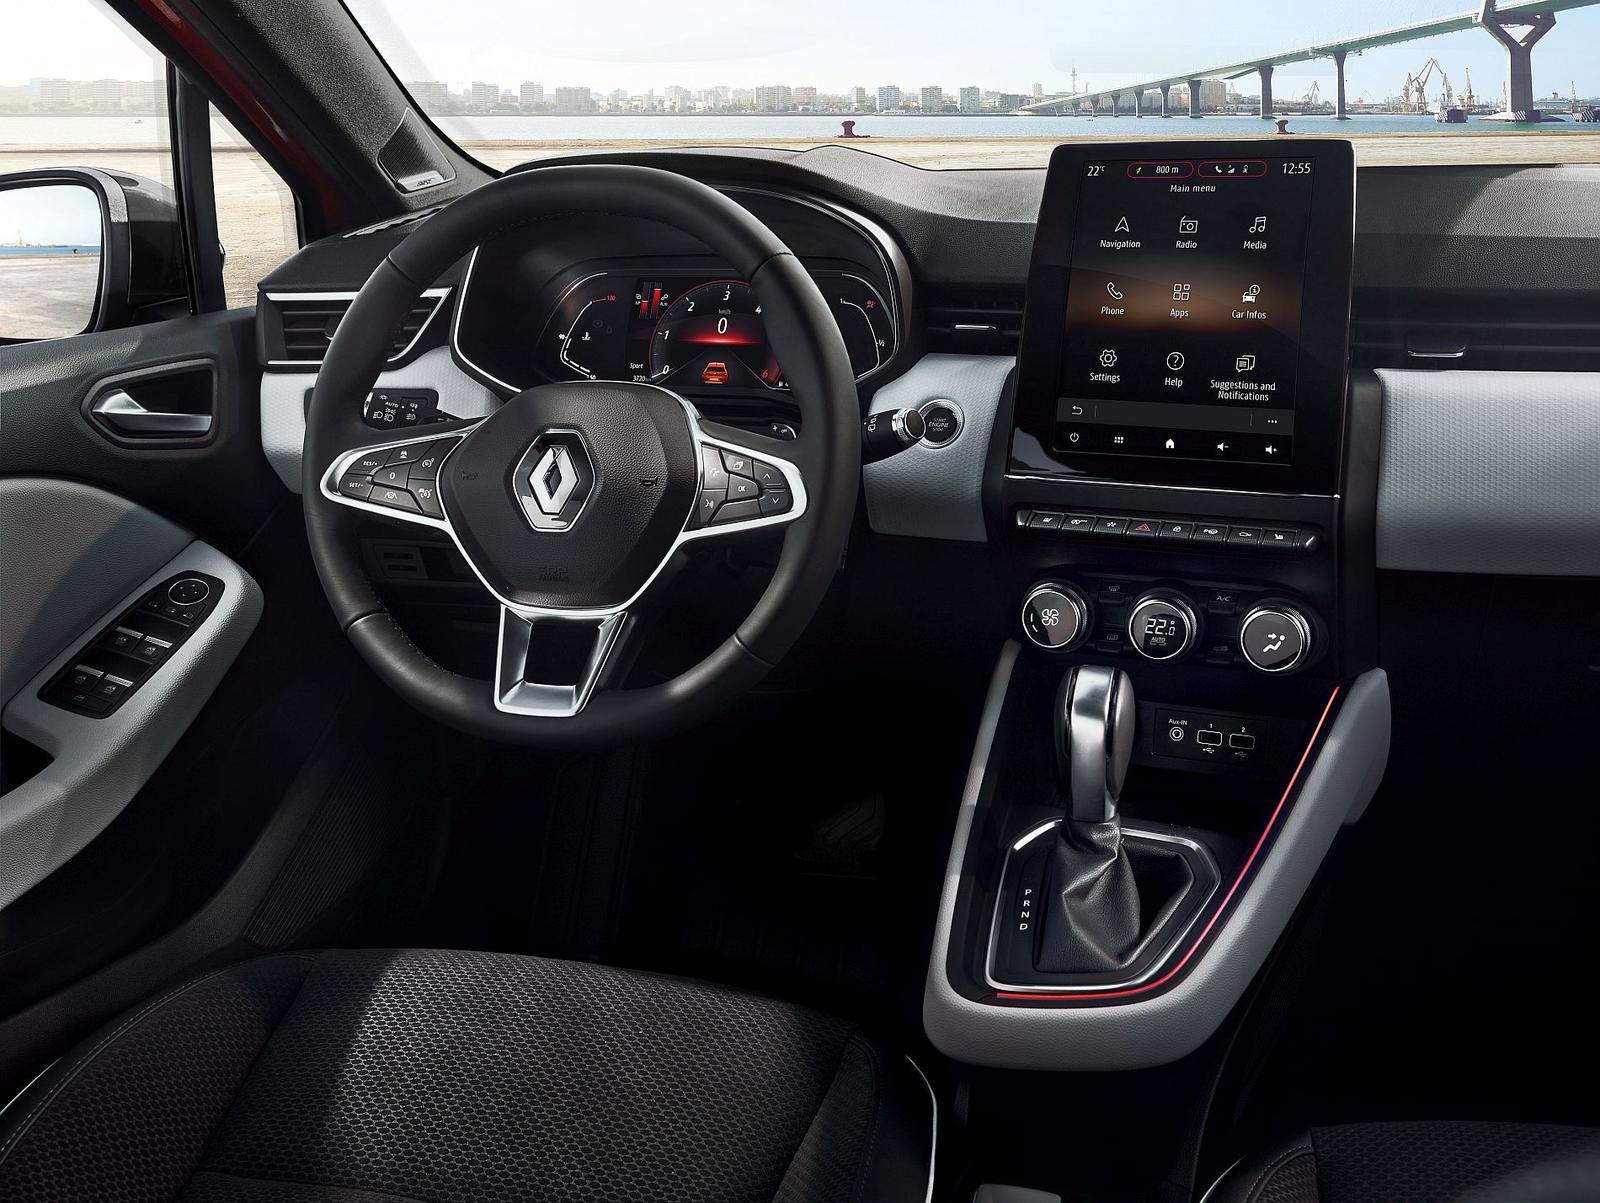 Renault Clio interior 2019 (7)